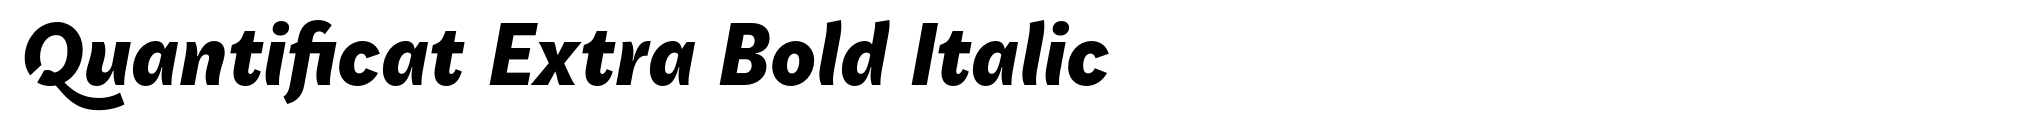 Quantificat Extra Bold Italic image